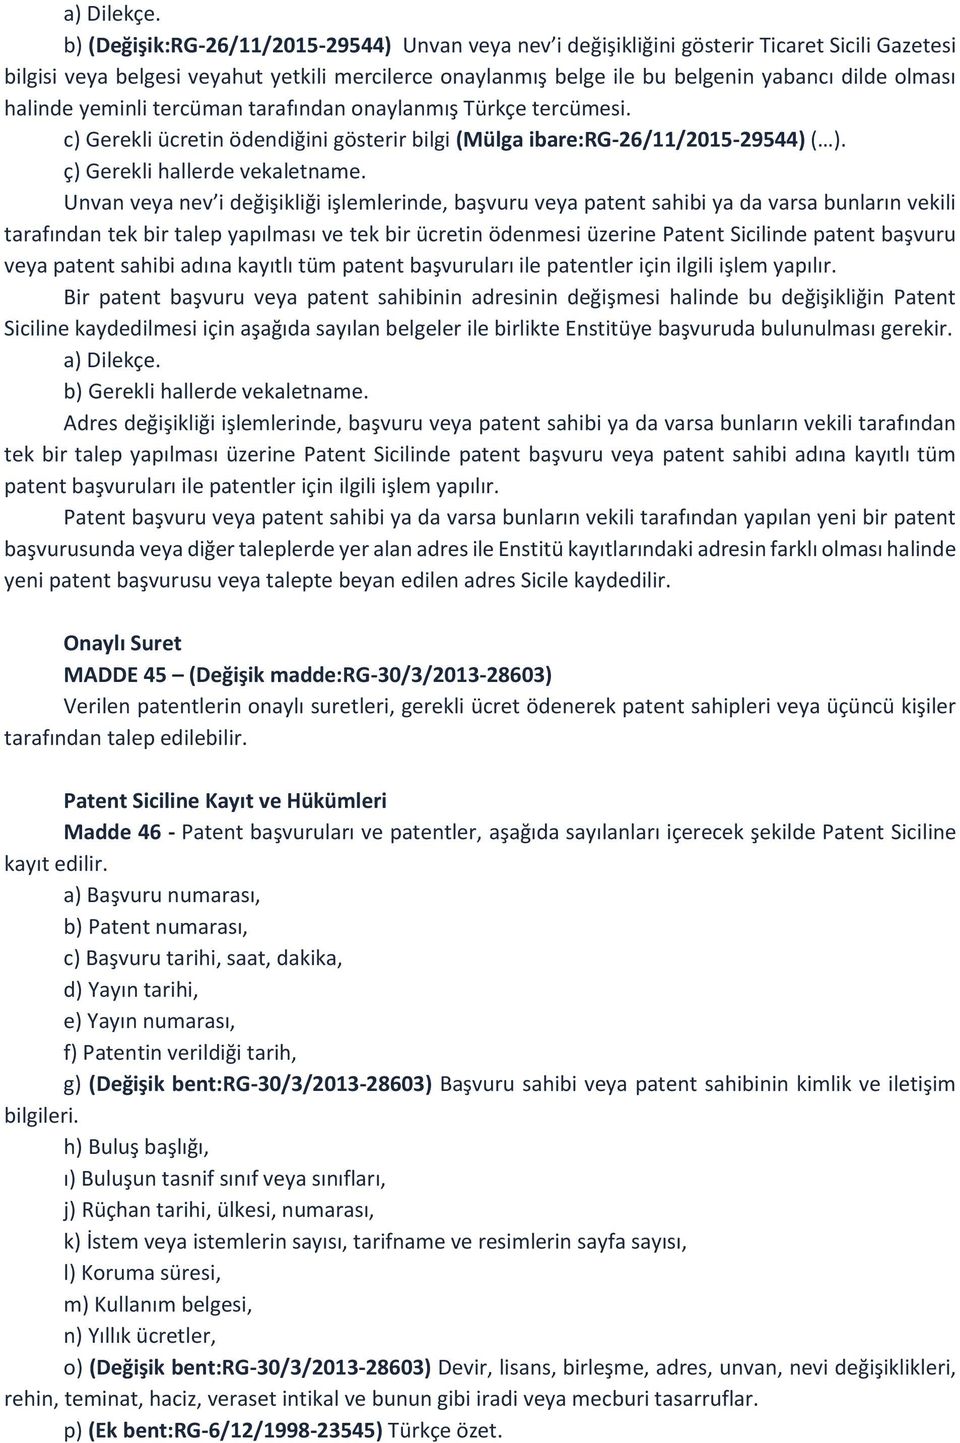 halinde yeminli tercüman tarafından onaylanmış Türkçe tercümesi. c) Gerekli ücretin ödendiğini gösterir bilgi (Mülga ibare:rg-26/11/2015-29544) ( ). ç) Gerekli hallerde vekaletname.